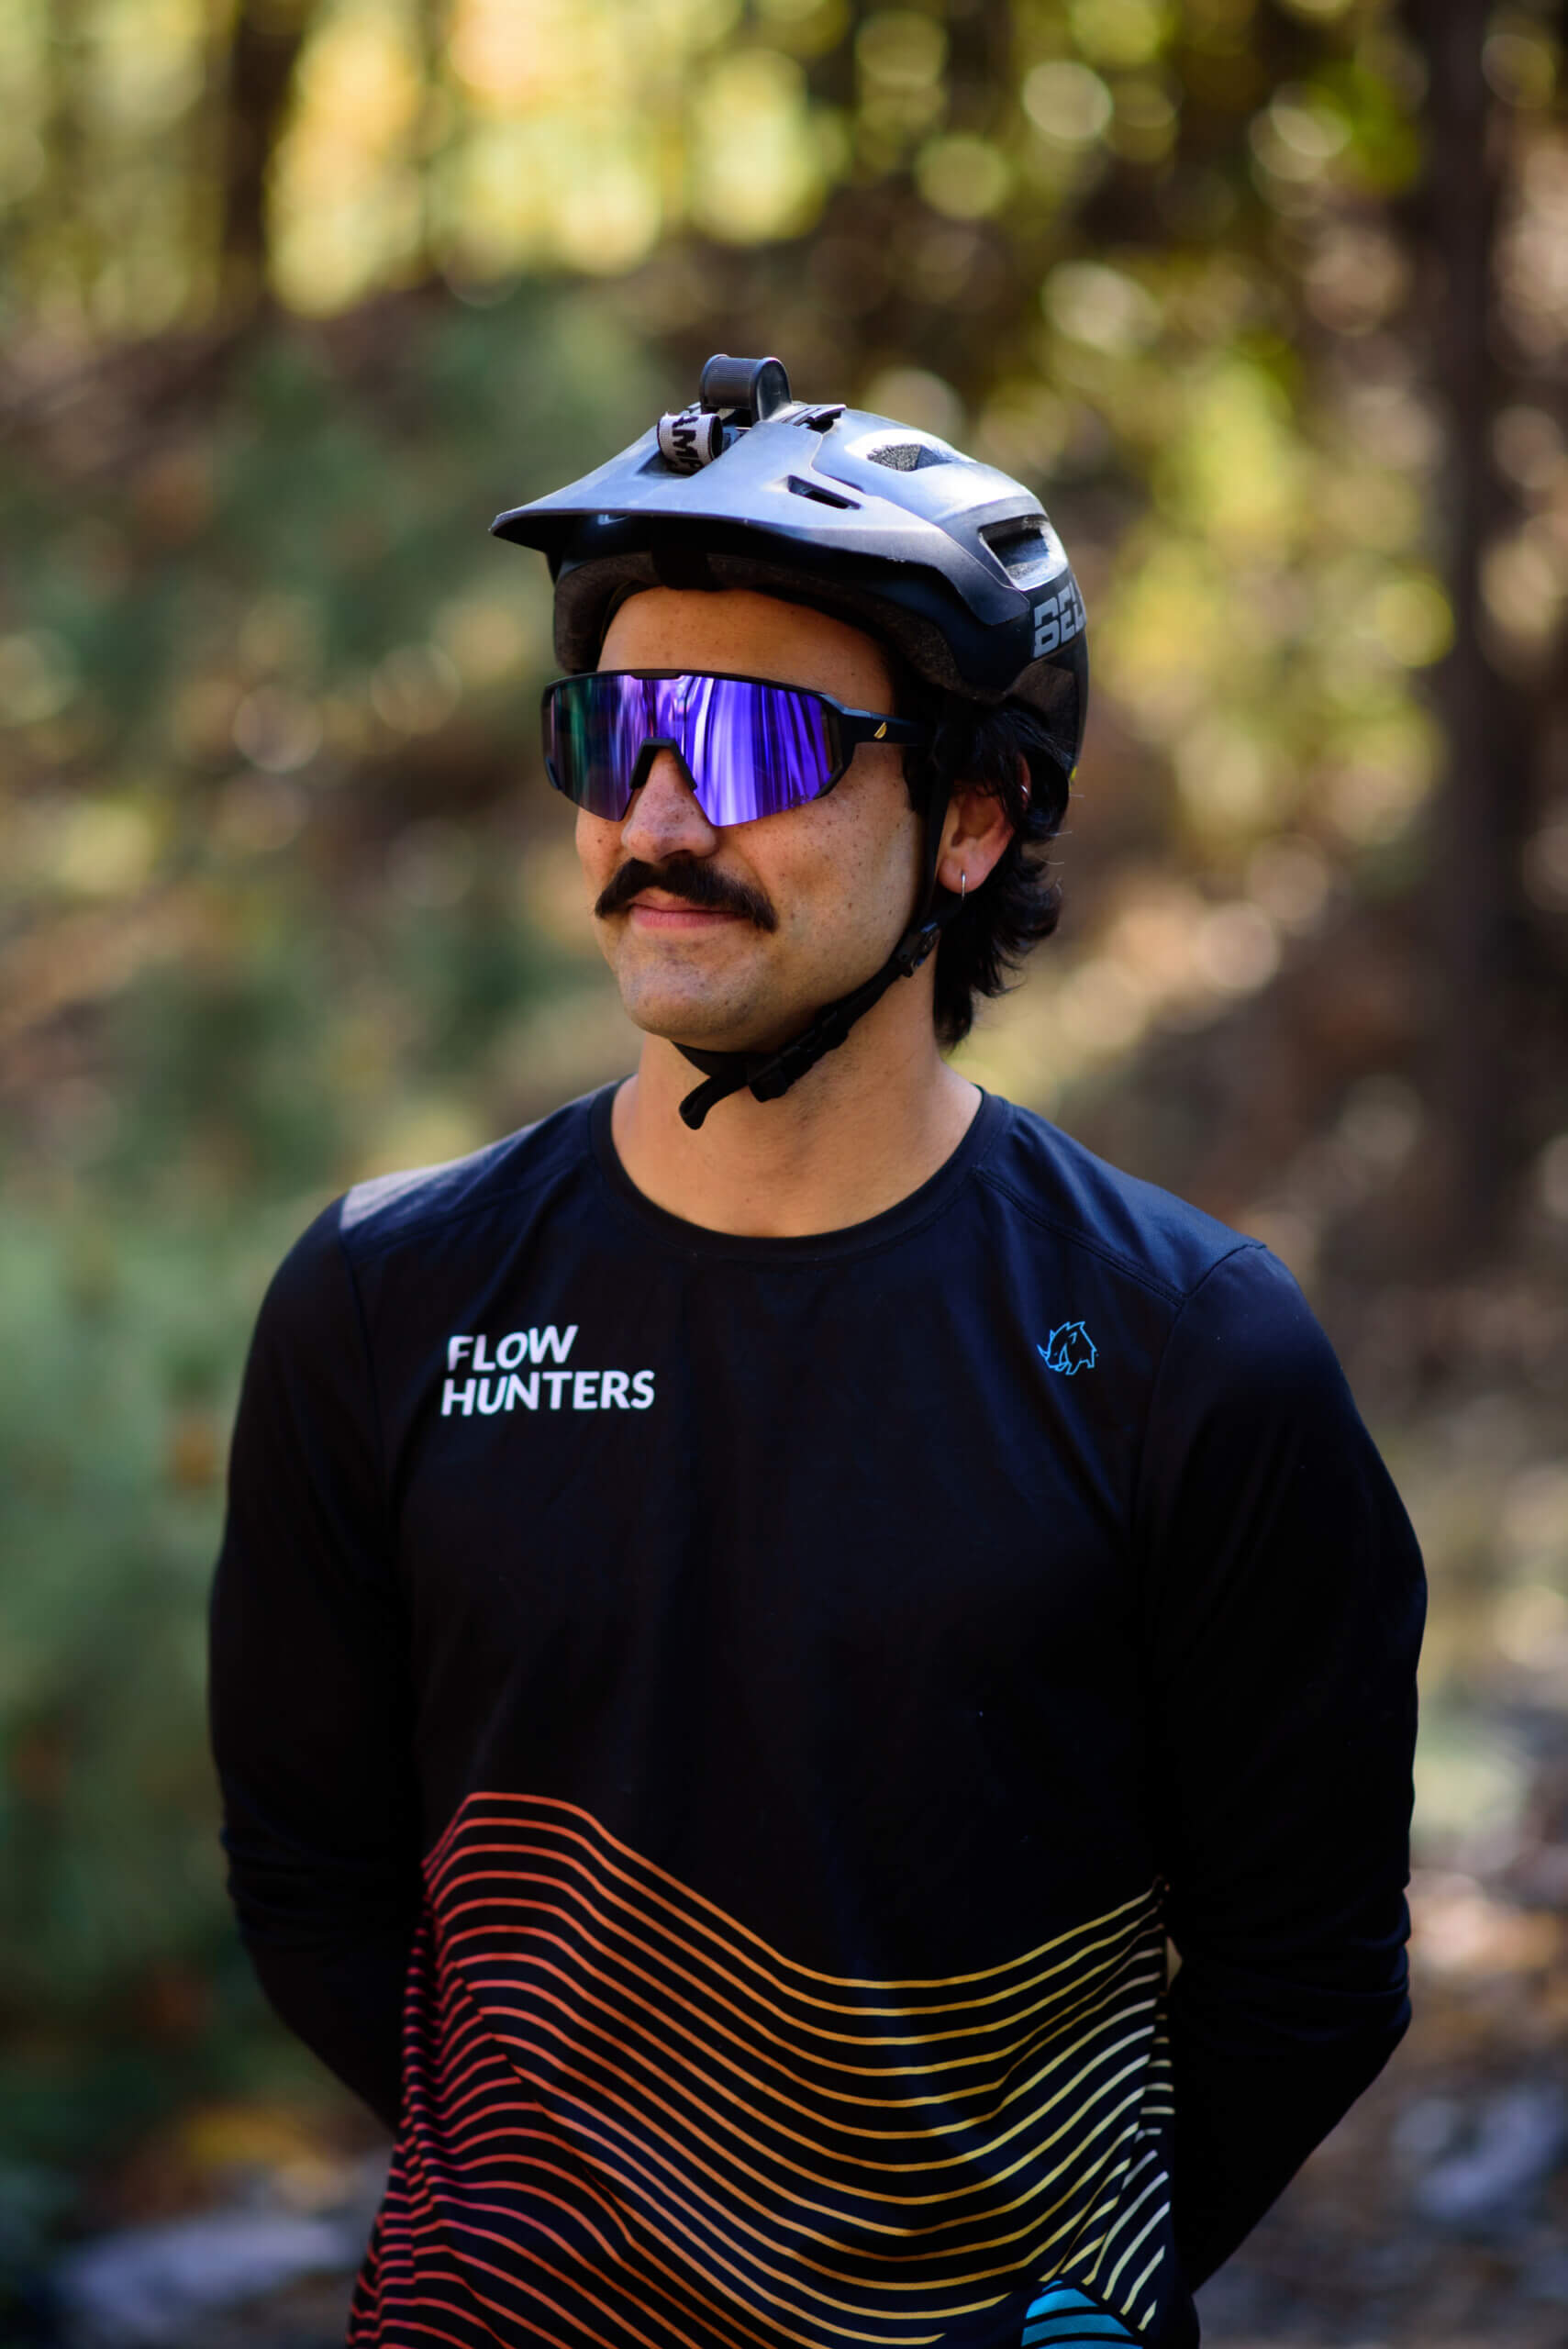 Gafas para ciclistas, ¿Mountain Bike o ciclismo de montaña?